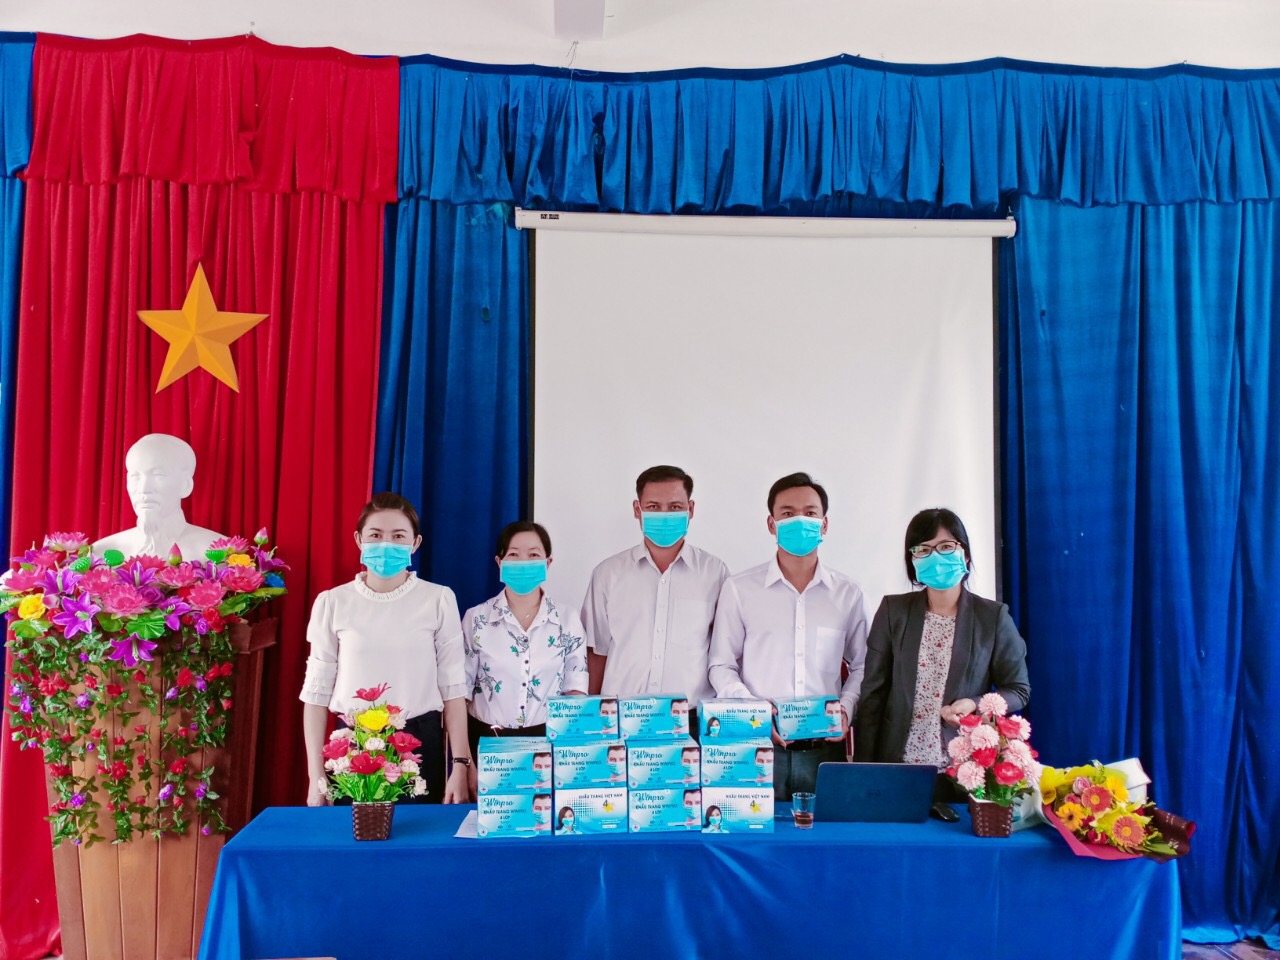 Sở Giáo dục và Đào tạo cùng với Công đoàn ngành Giáo dục tỉnh Kon Tum tặng 1000 khẩu trang y tế cho các học sinh thi Tốt nghiệp THPT năm 2020 tại huyện Đăk Glei